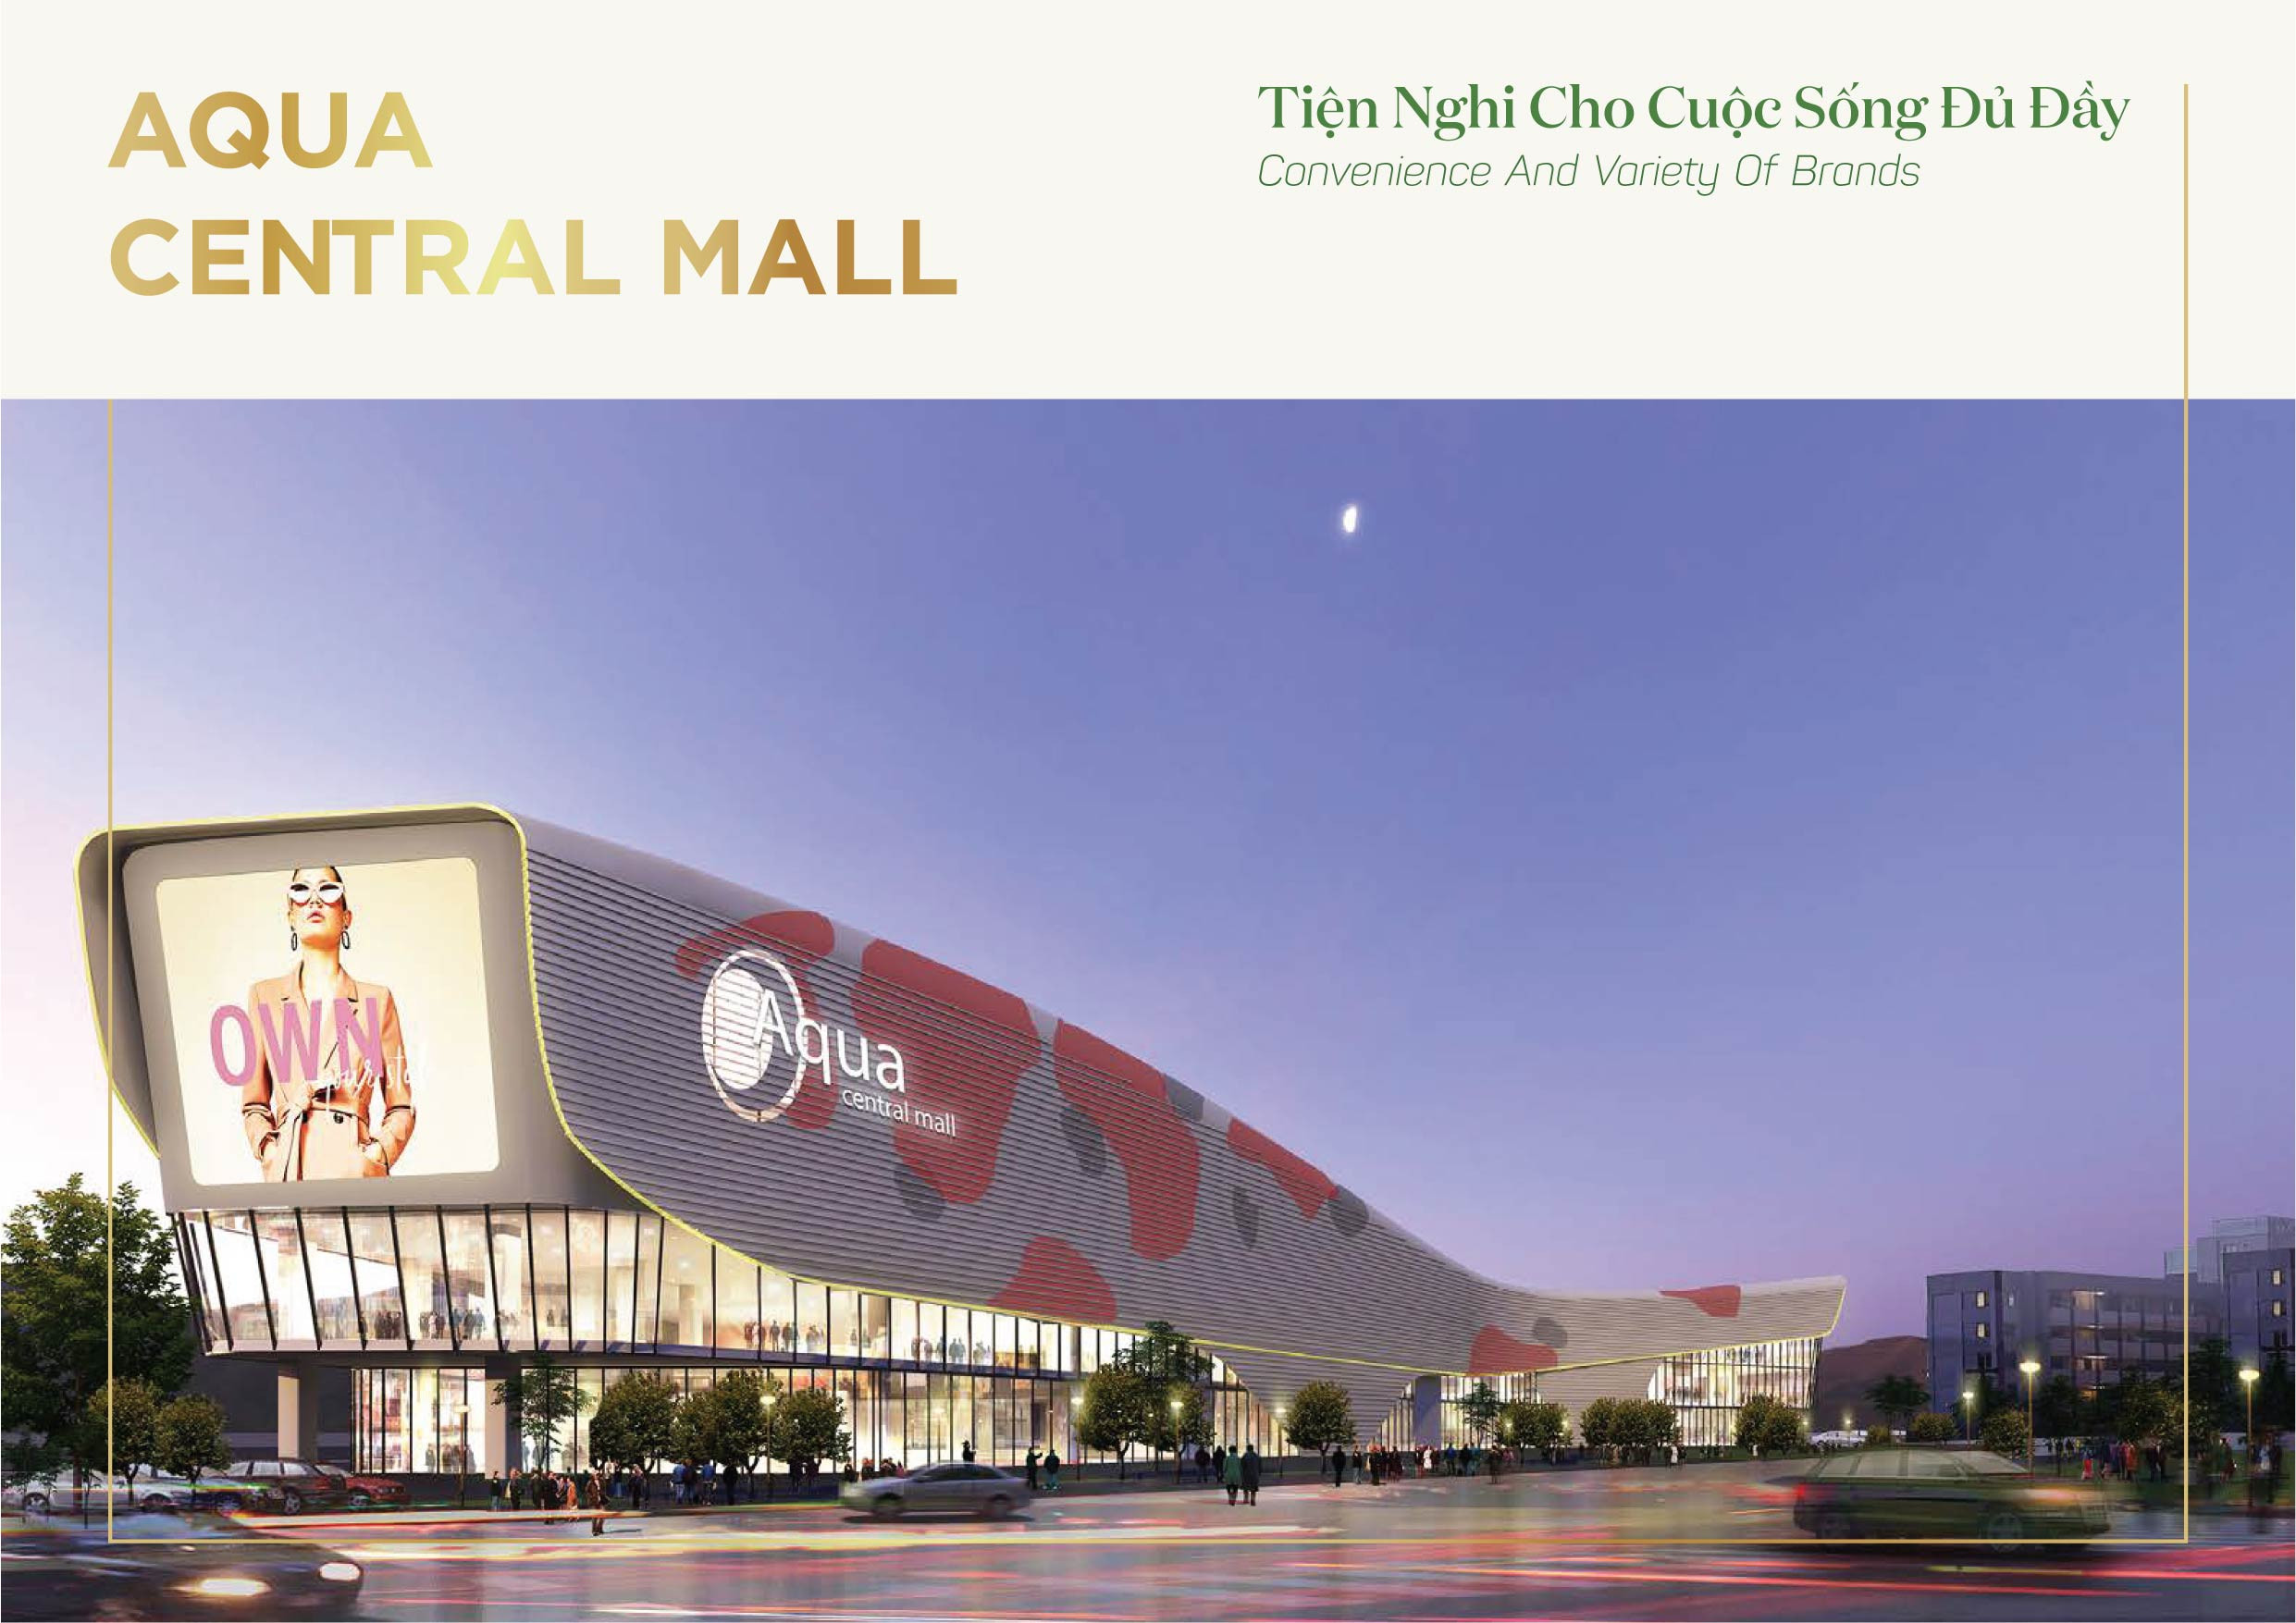 Tiện ích Aqua Central Mall trong khuôn viên nội khu của dự án The Stella Aqua City